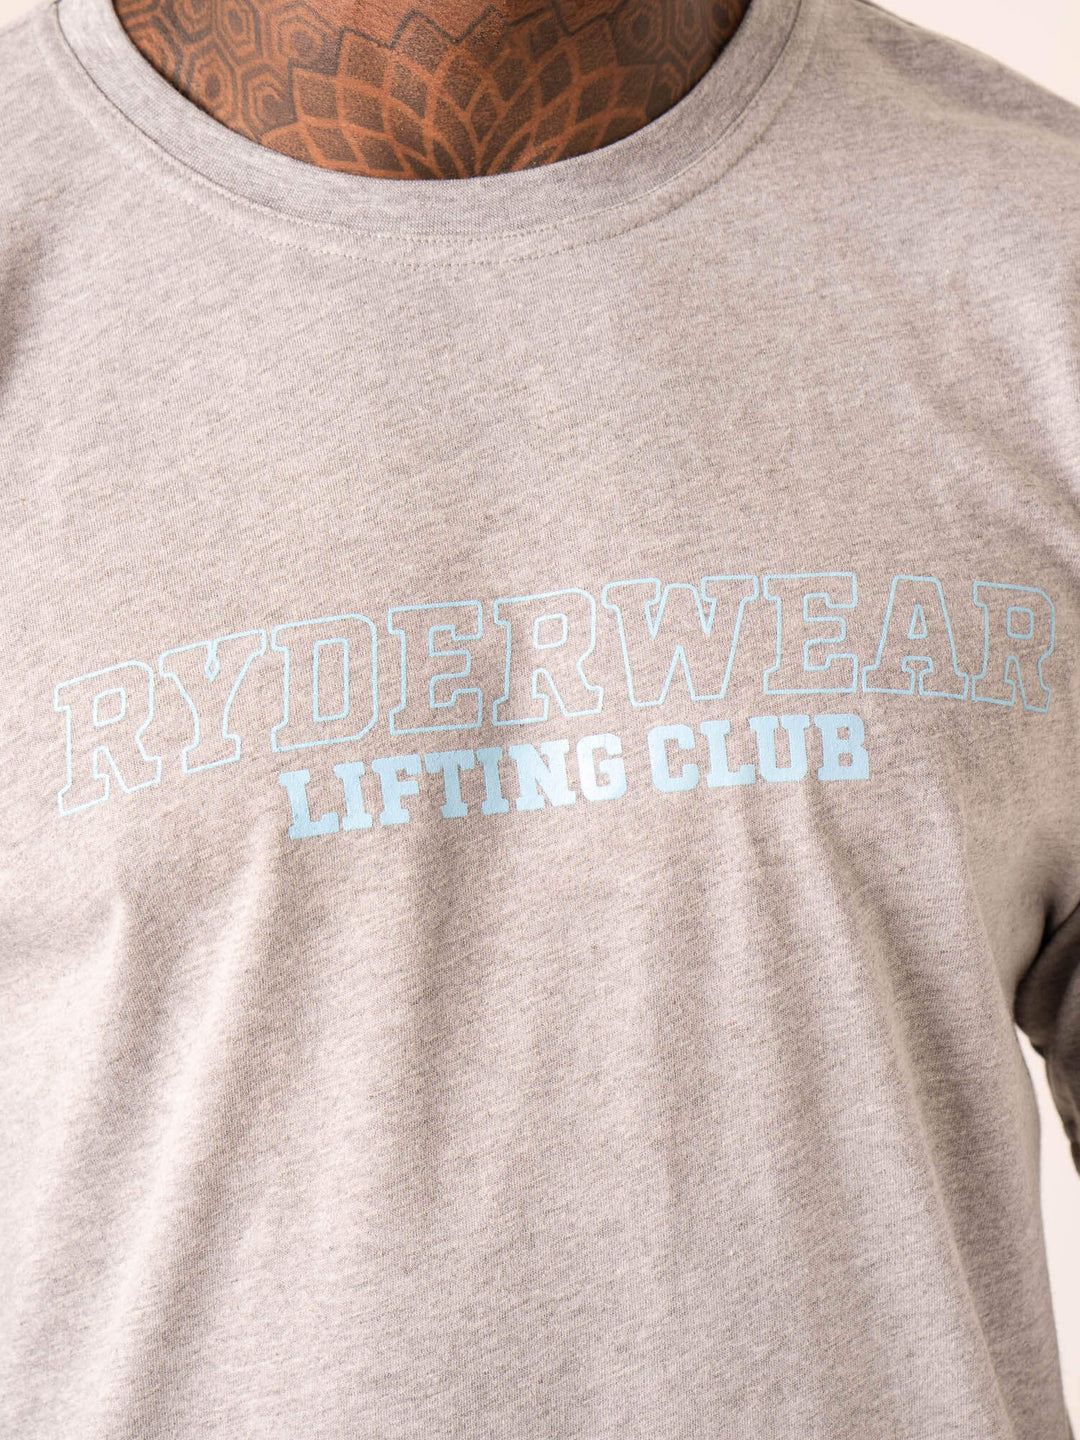 Lifting Club T-Shirt - Grey Marl Clothing Ryderwear 